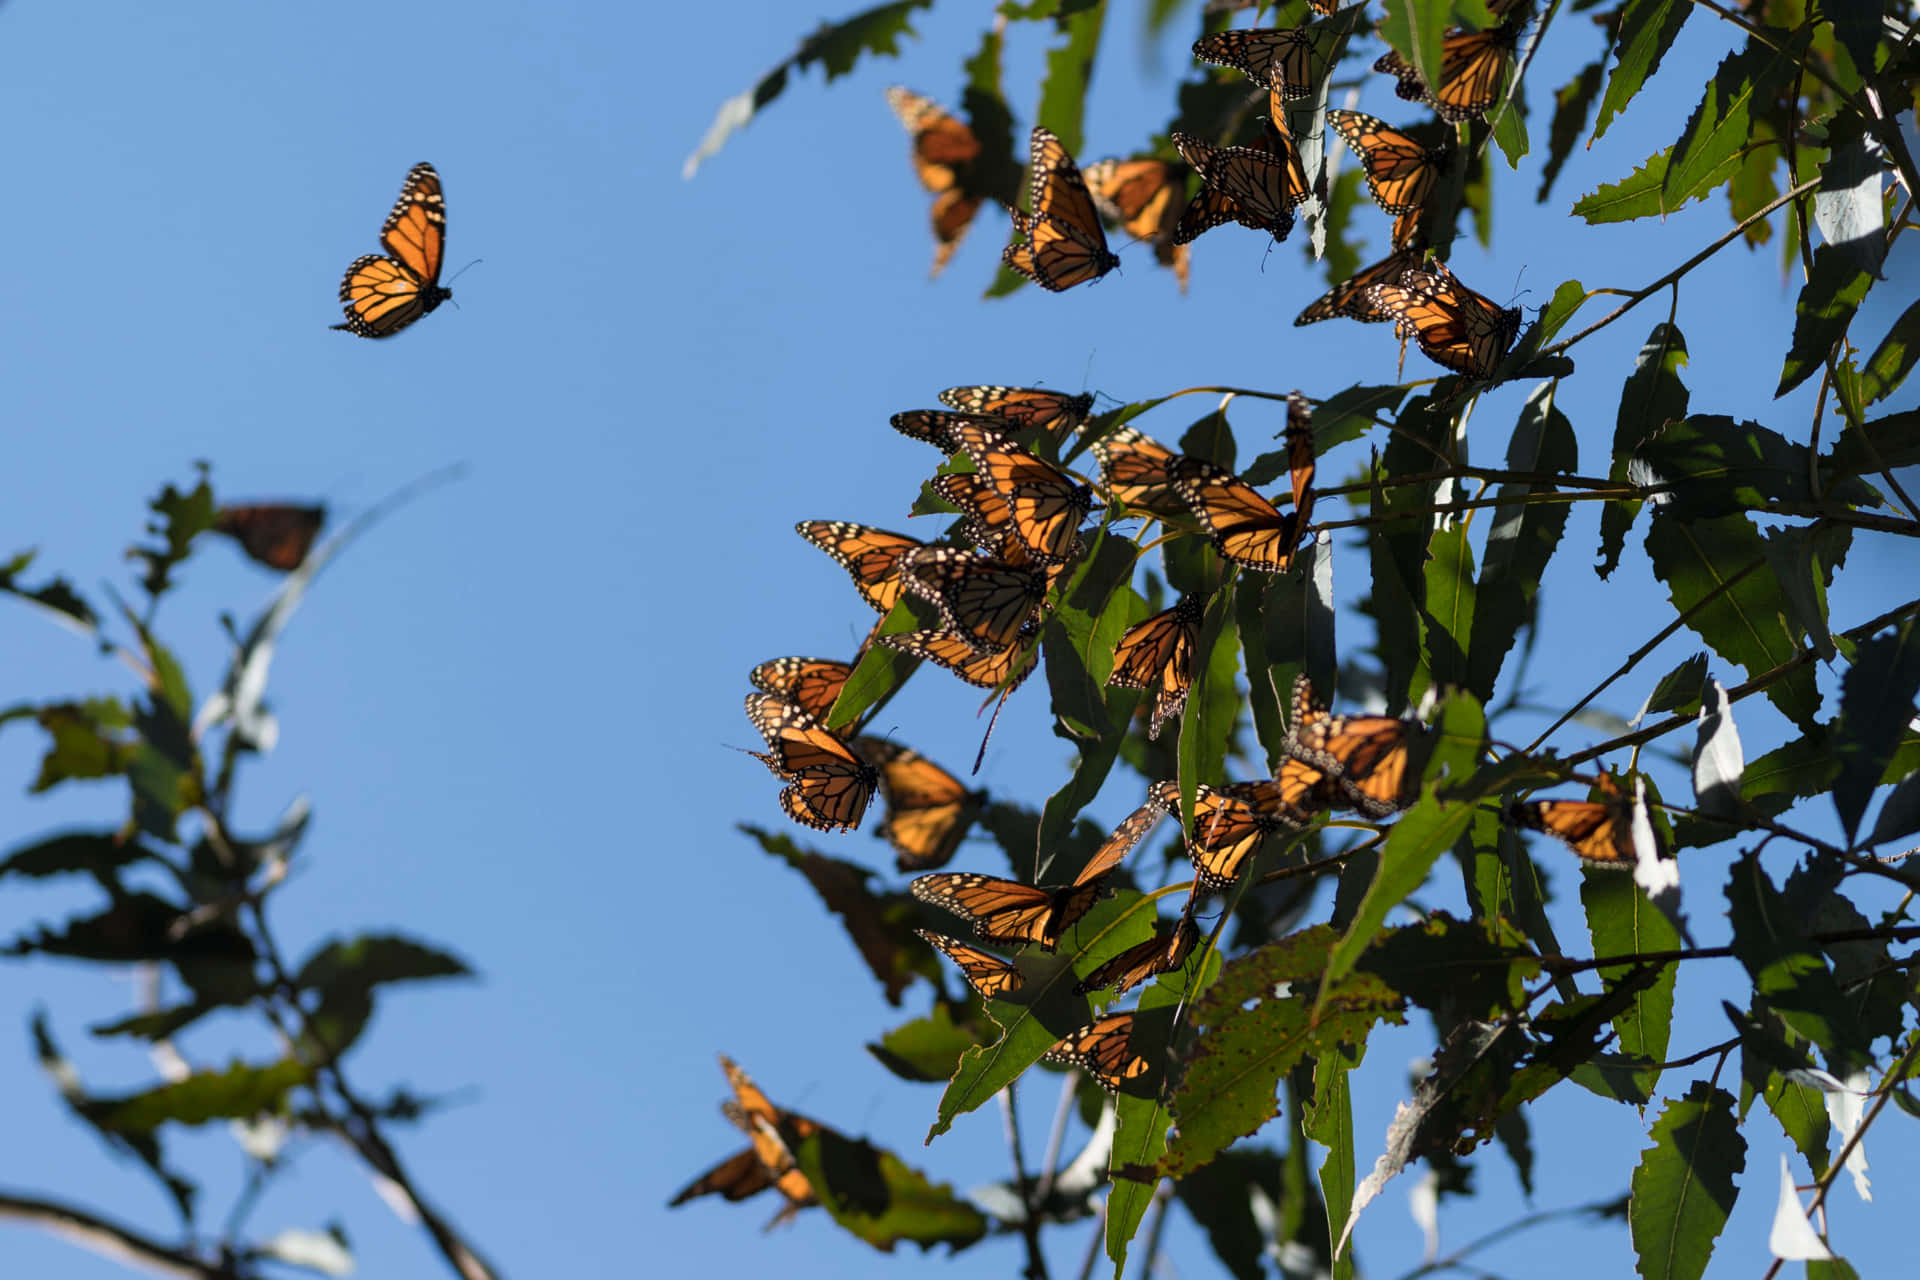 “Migrating Butterflies in Flight” Wallpaper